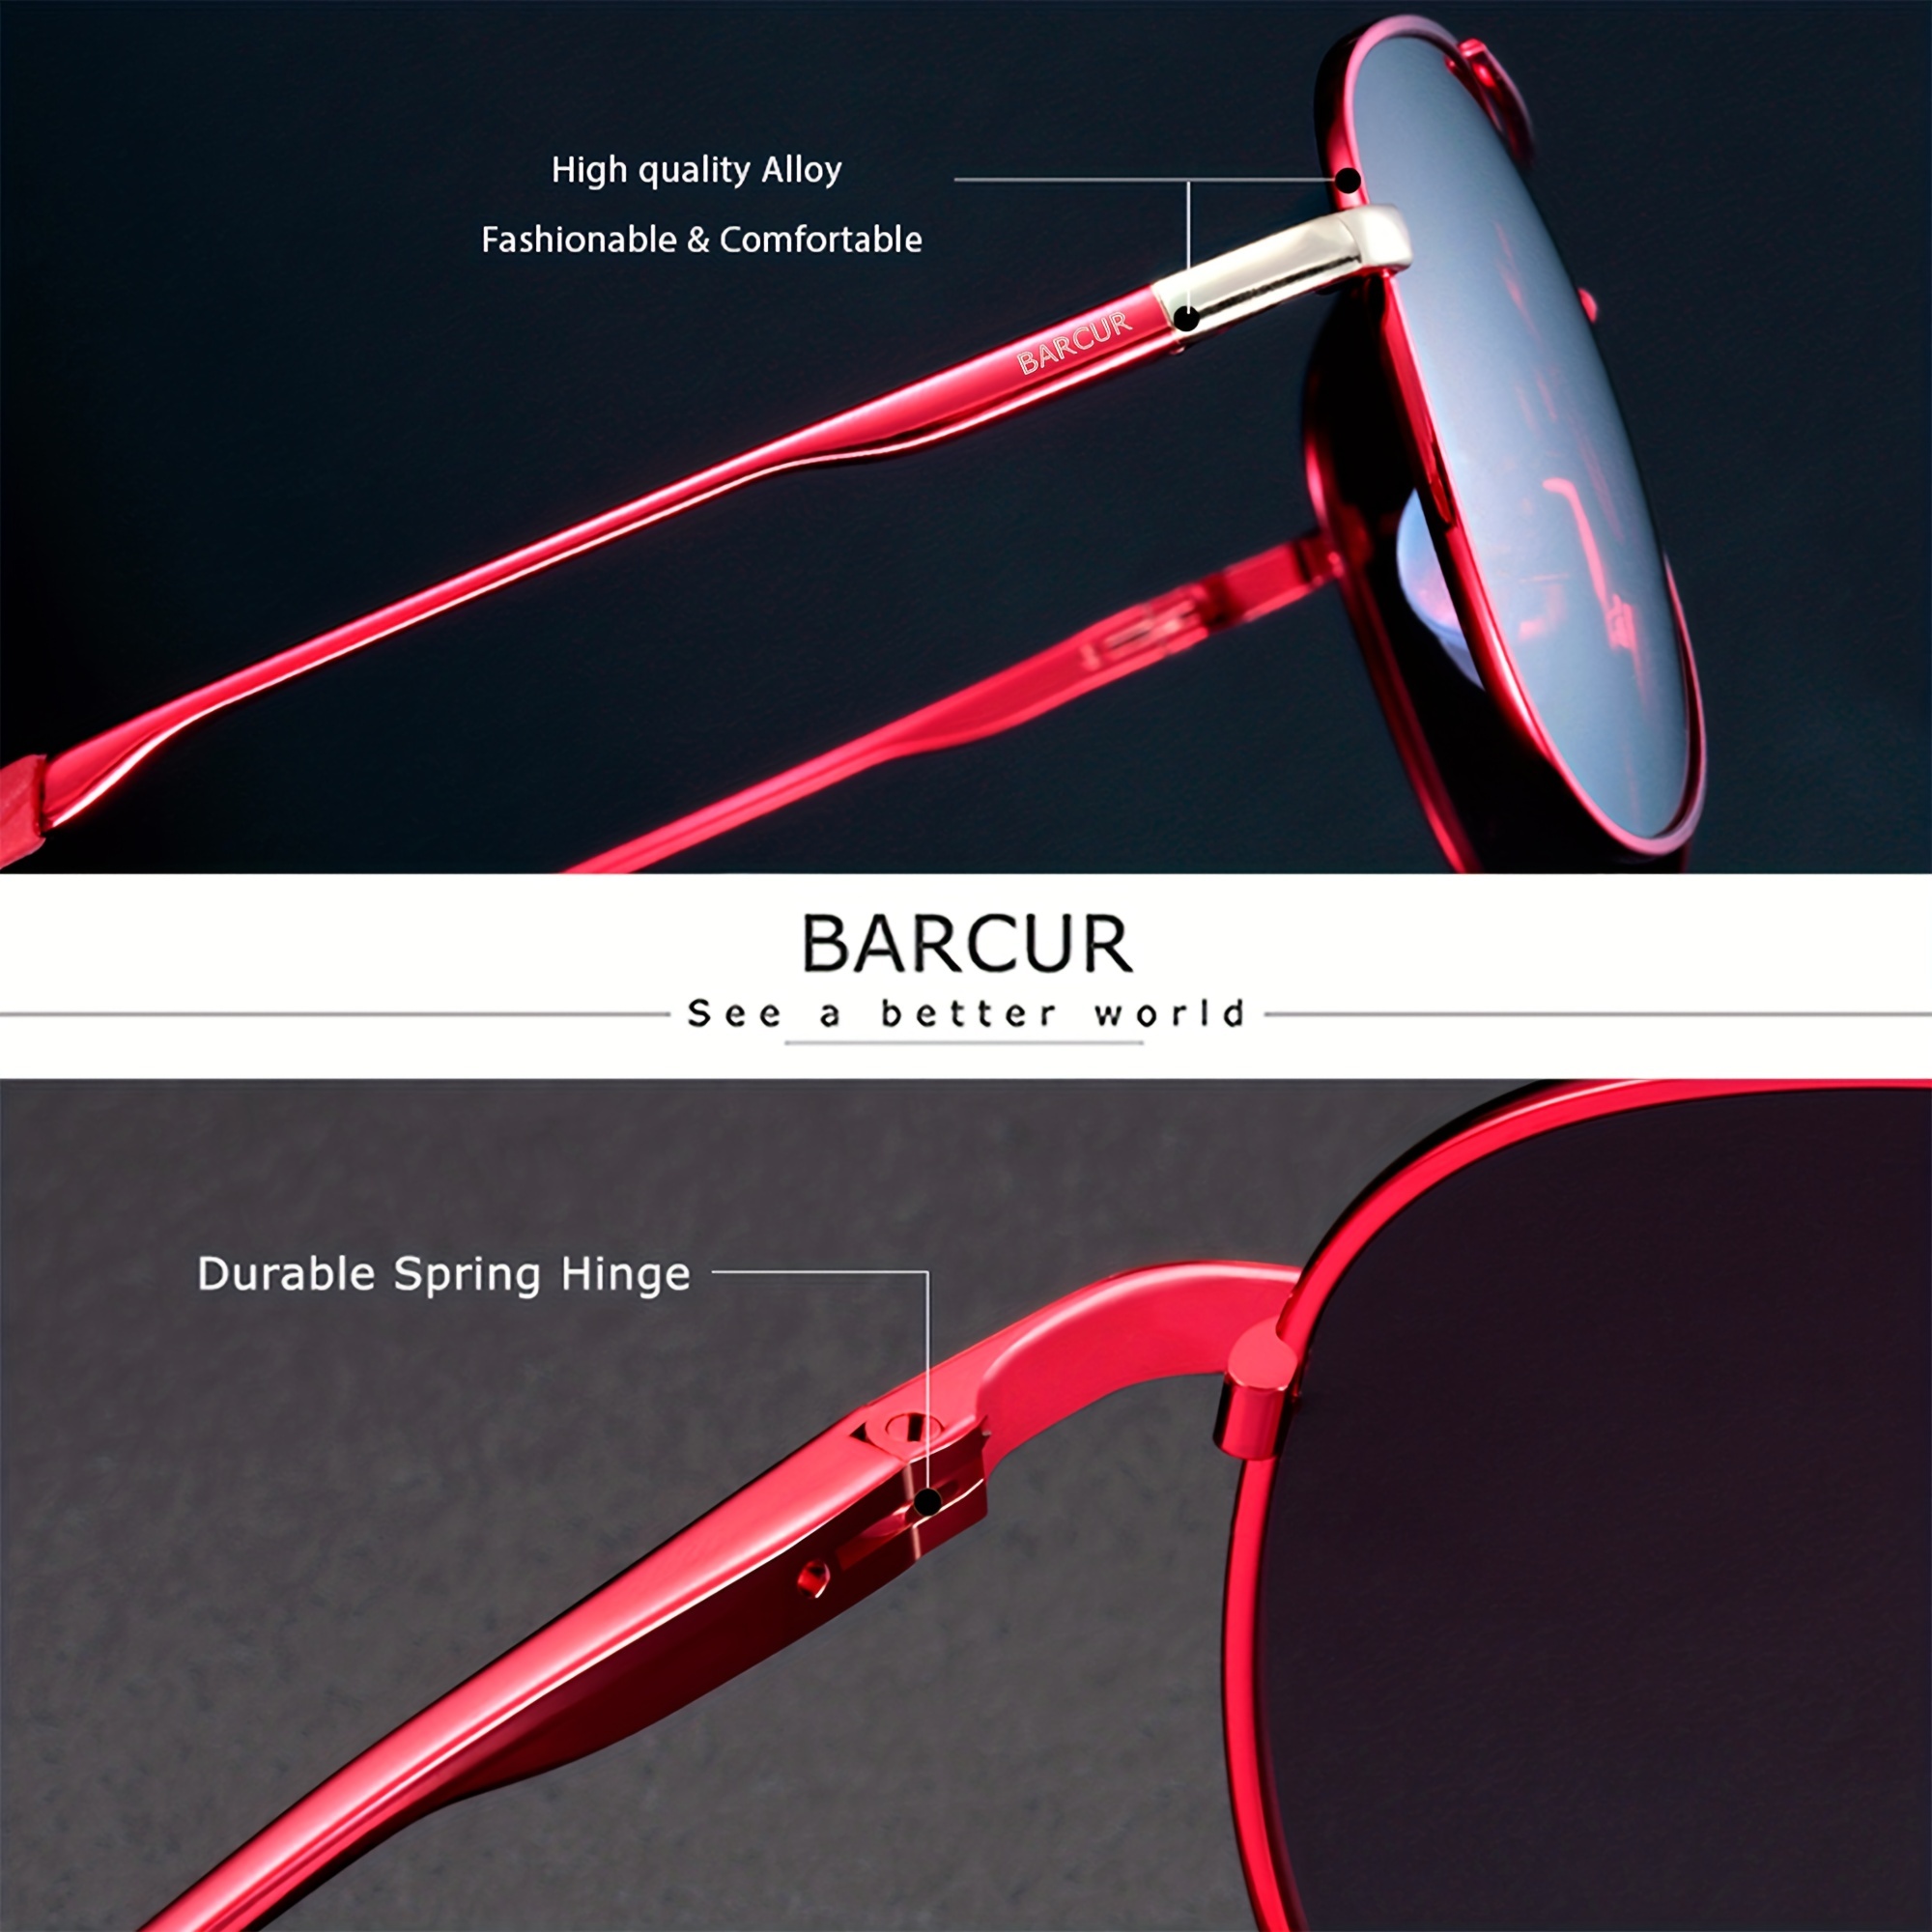 Lightweight Durable Polarized Aviator Sunglasses for Women Men UV400  Glasses USA